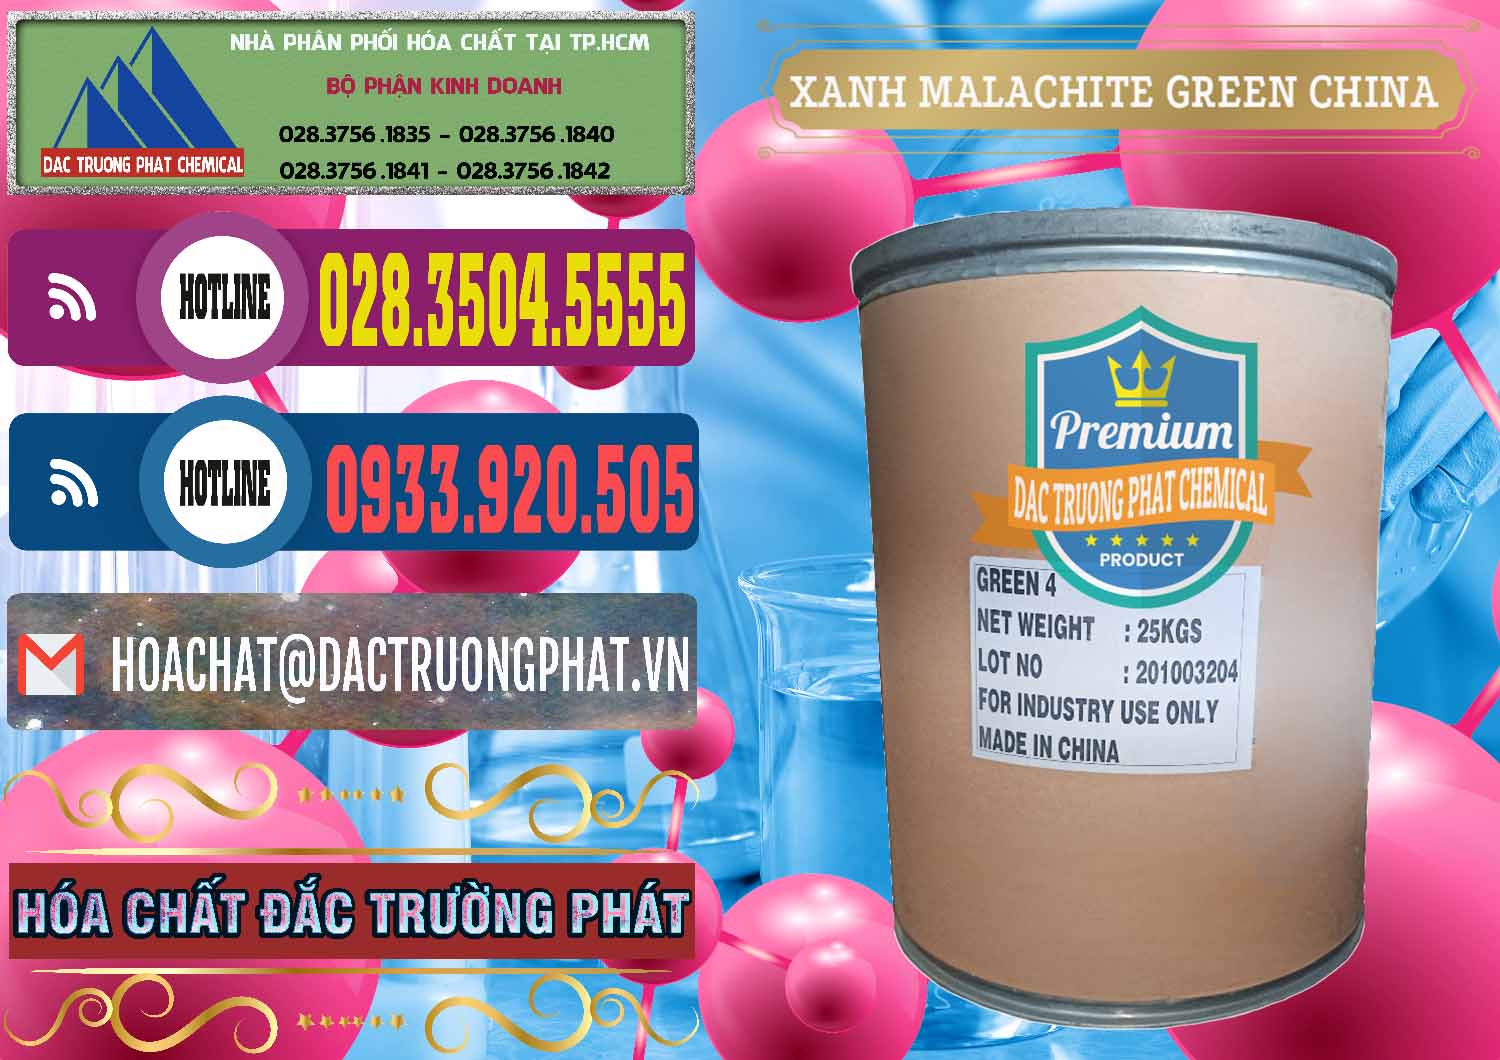 Công ty chuyên phân phối & bán Xanh Malachite Green Trung Quốc China - 0325 - Chuyên phân phối ( kinh doanh ) hóa chất tại TP.HCM - muabanhoachat.com.vn